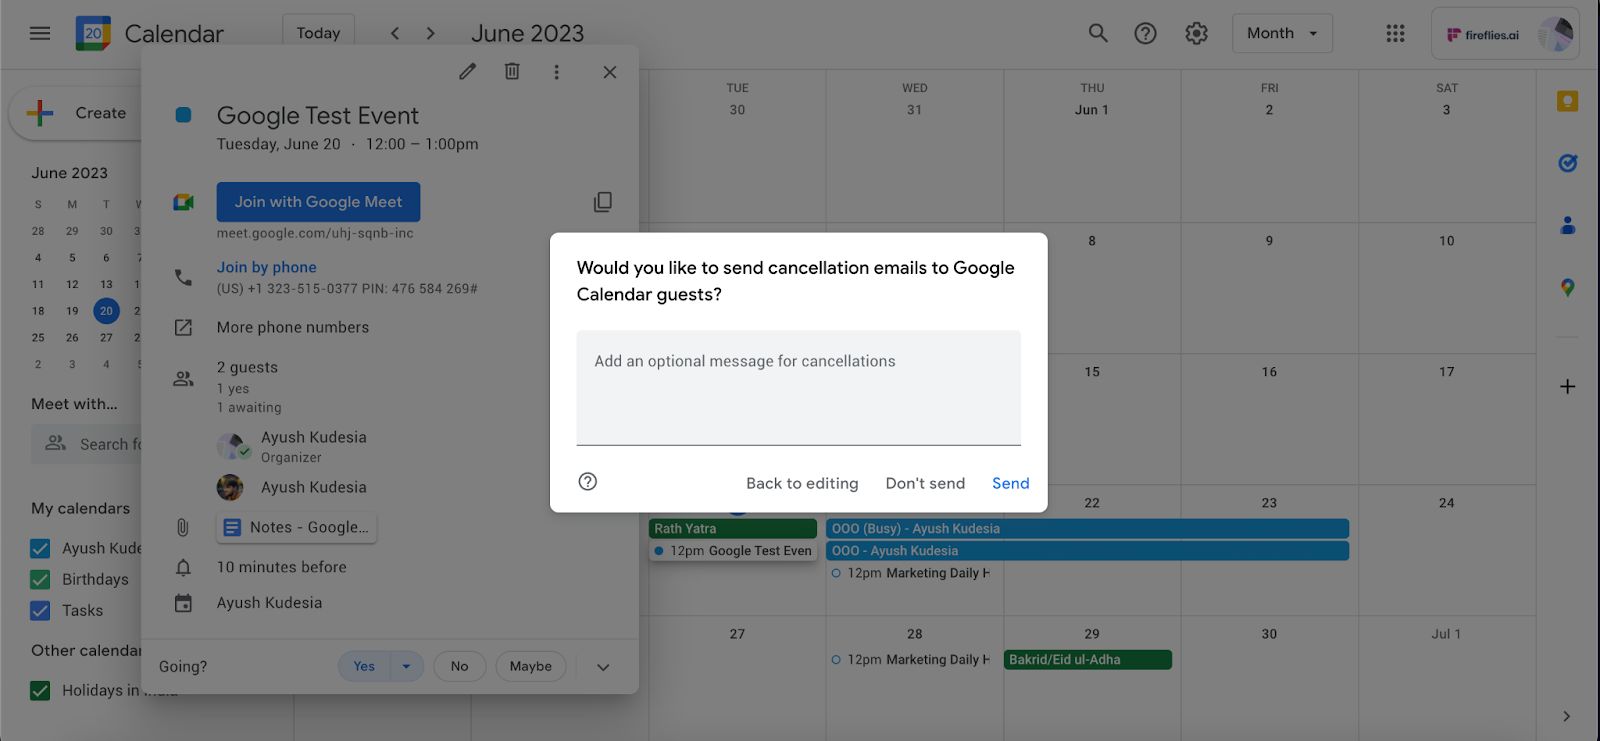 How to cancel Google Calendar event - Send cancelation email